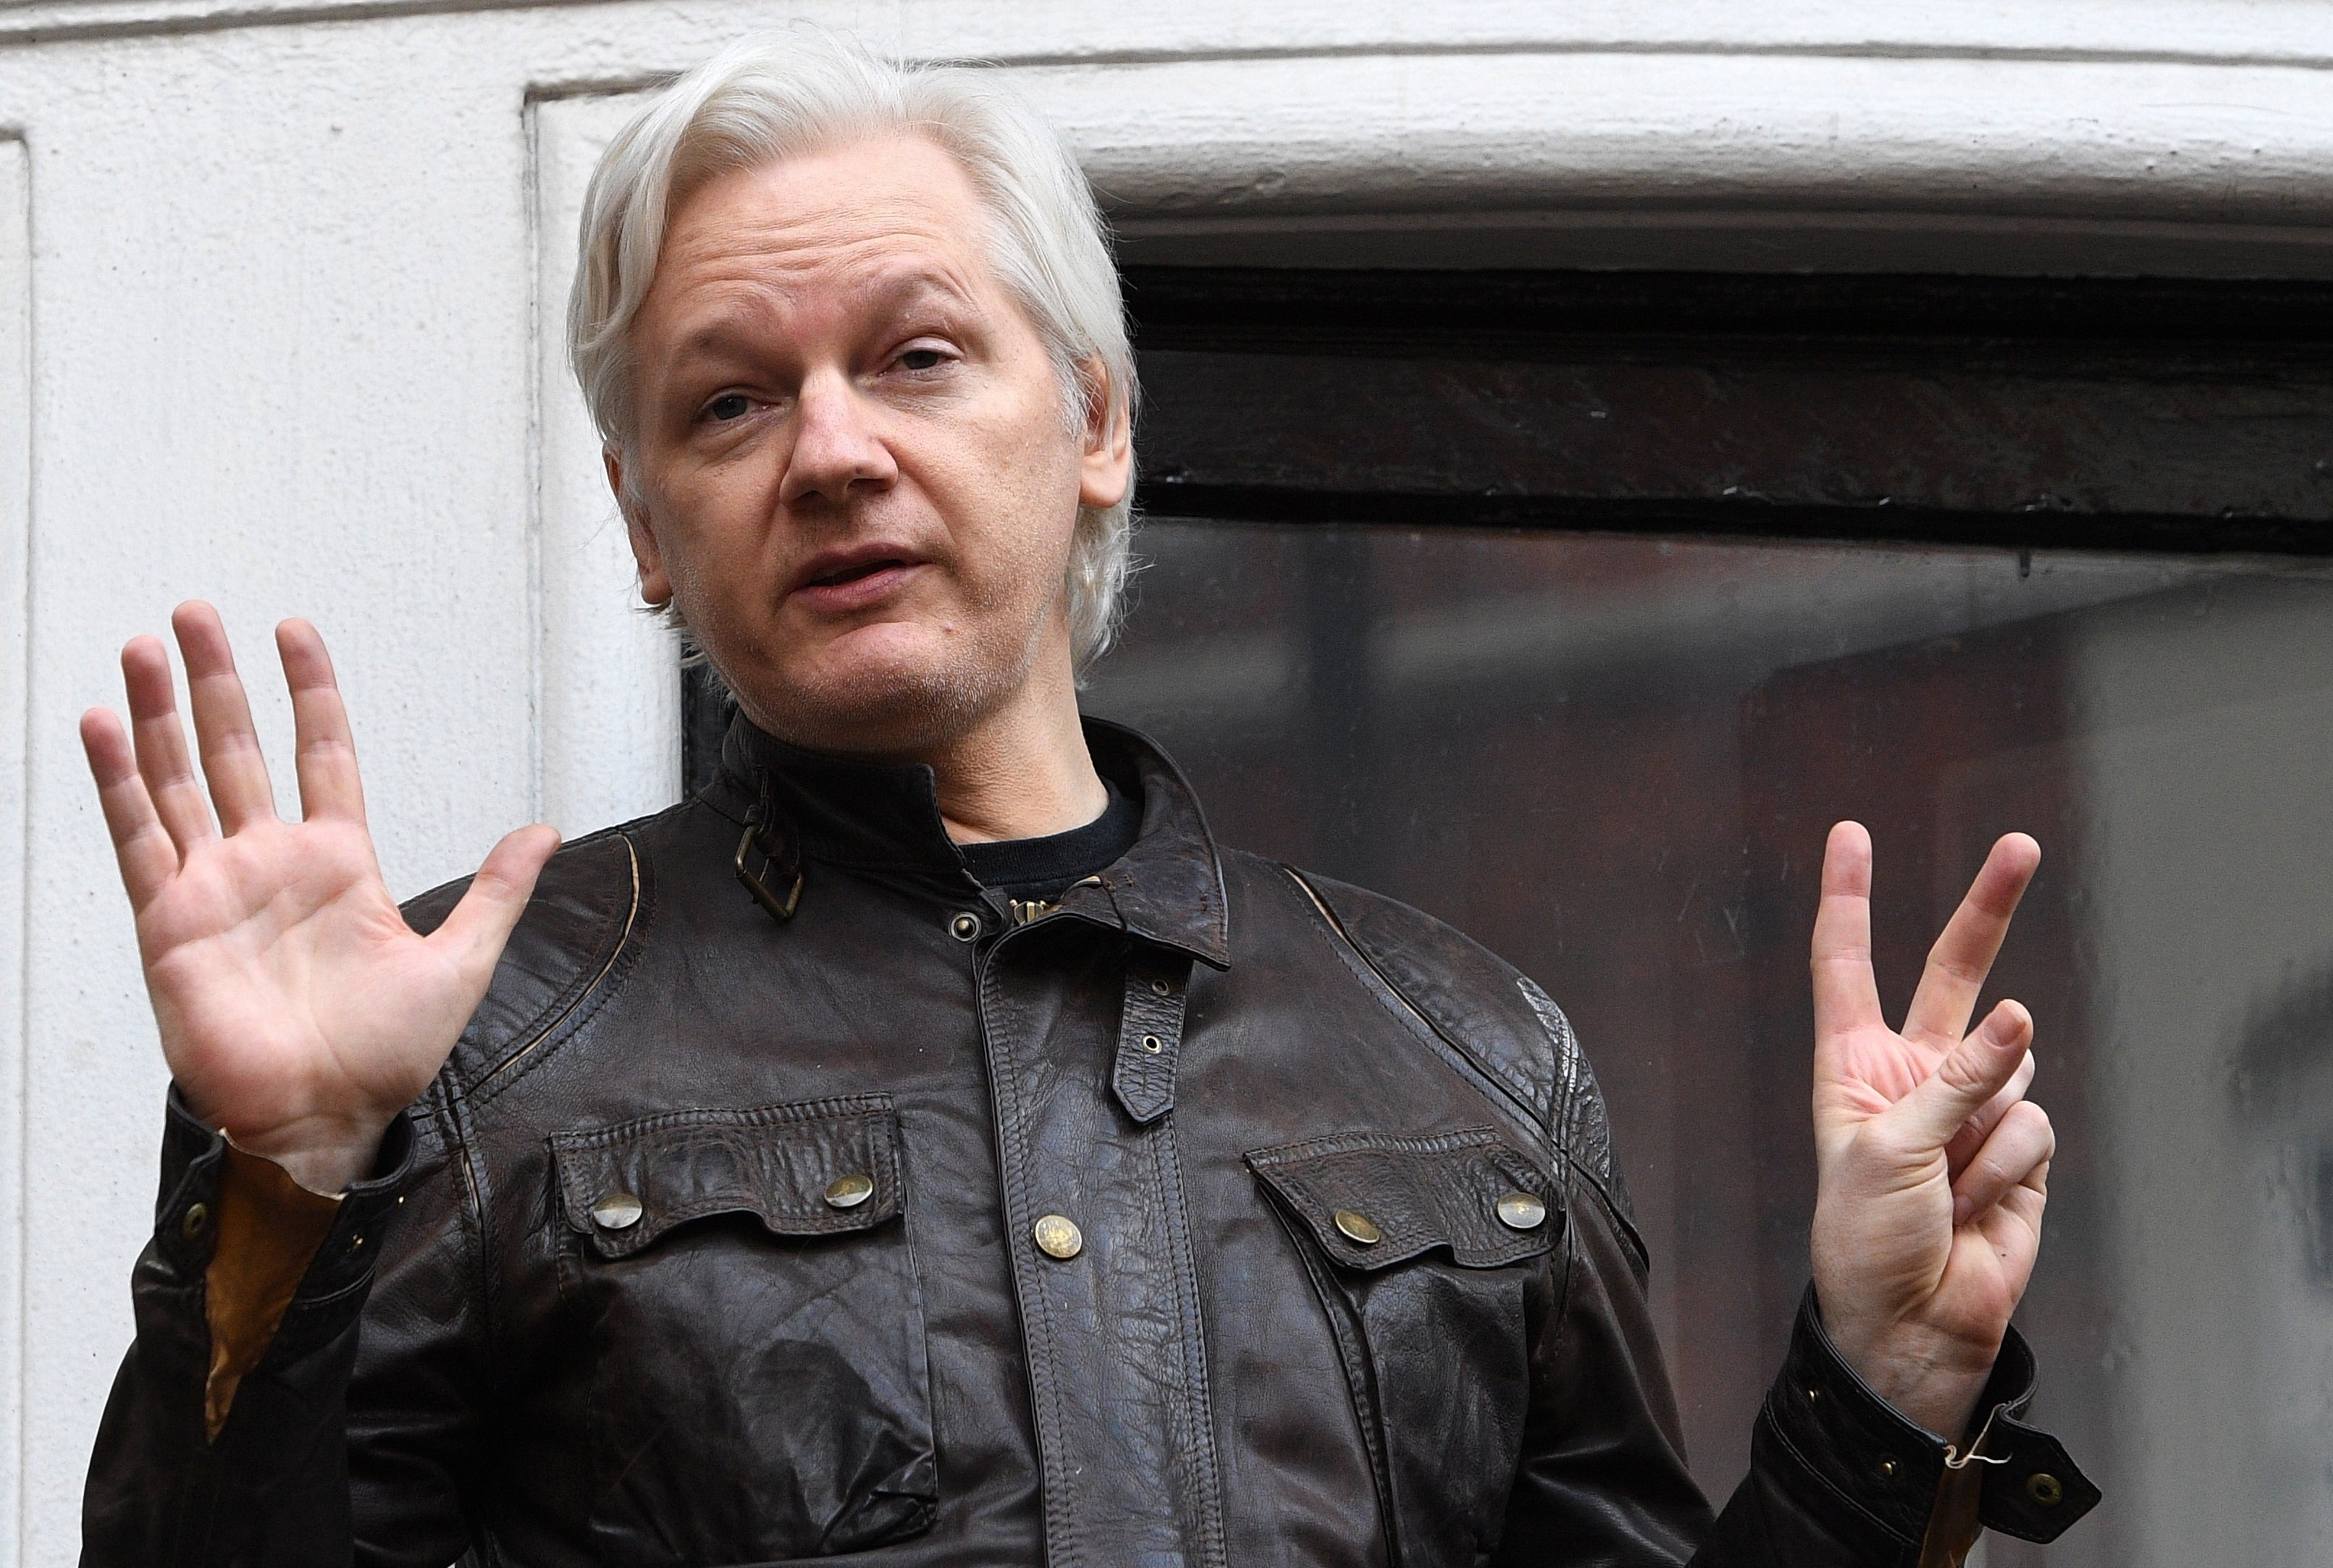 La defensa de Assange alerta de riesgo de suicidio si es extraditado a los EEUU